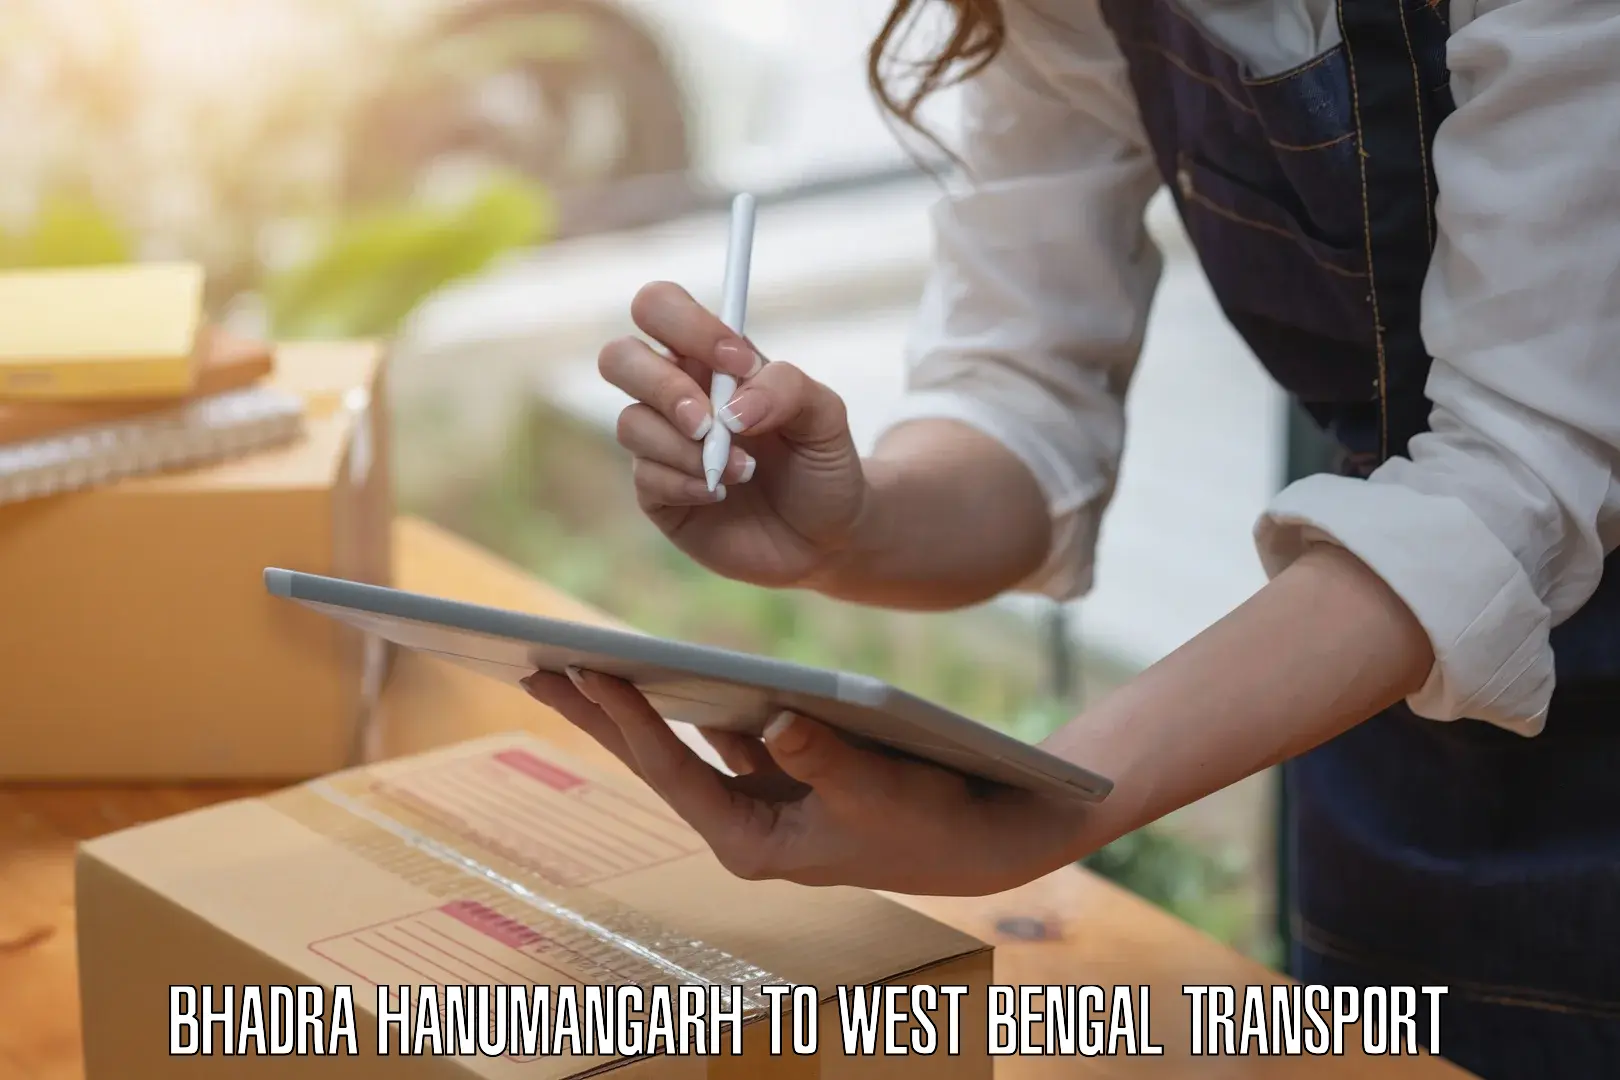 Furniture transport service Bhadra Hanumangarh to Kalijhora